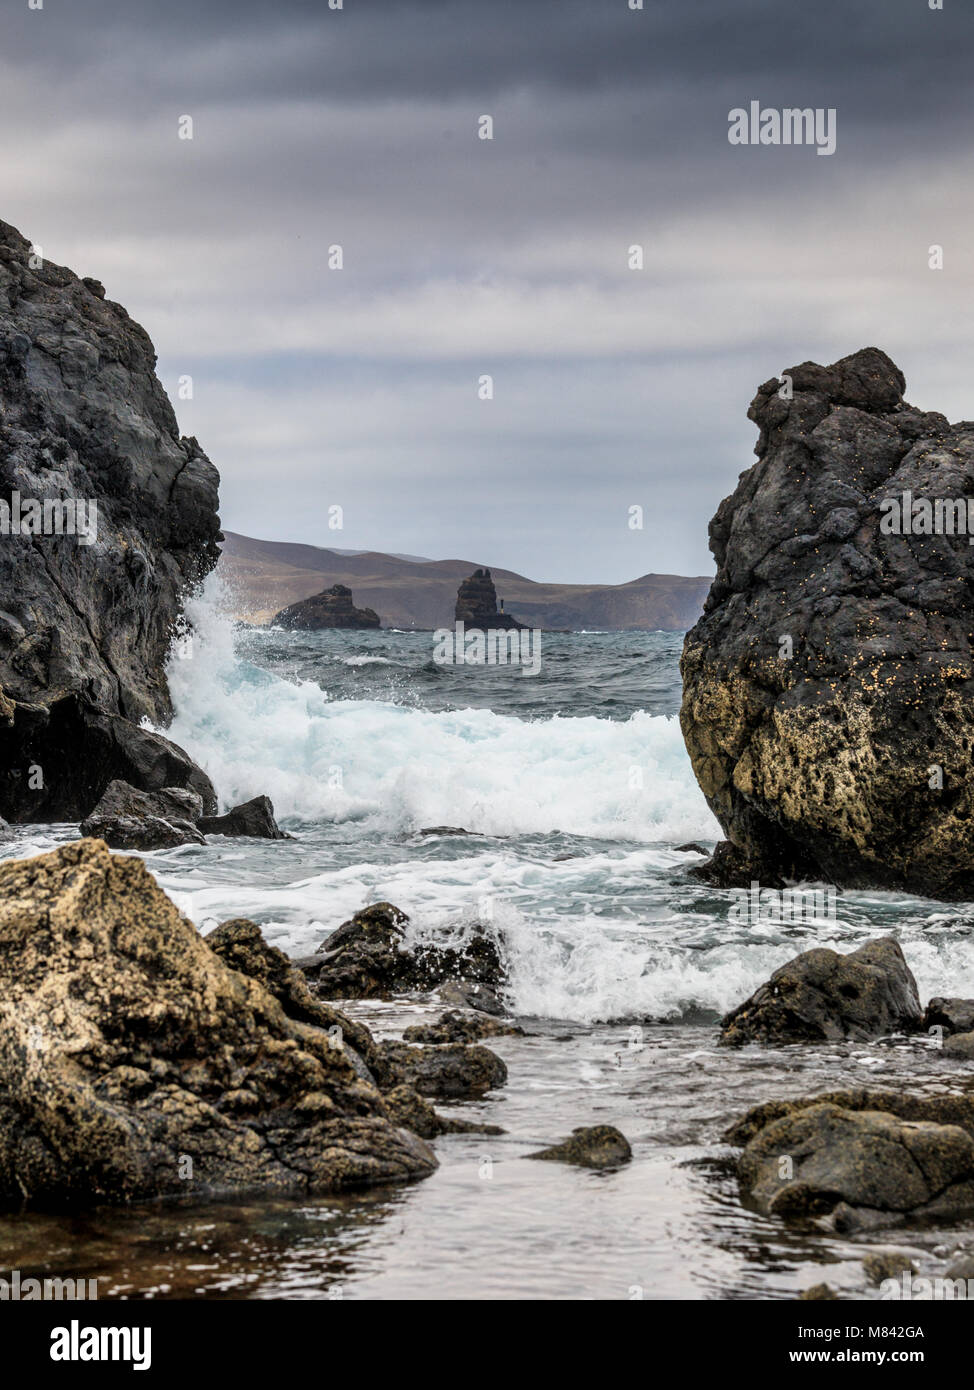 La spiaggia di roccia nei pressi di Orzola, Lanzarote, Isole Canarie, Spagna Foto Stock